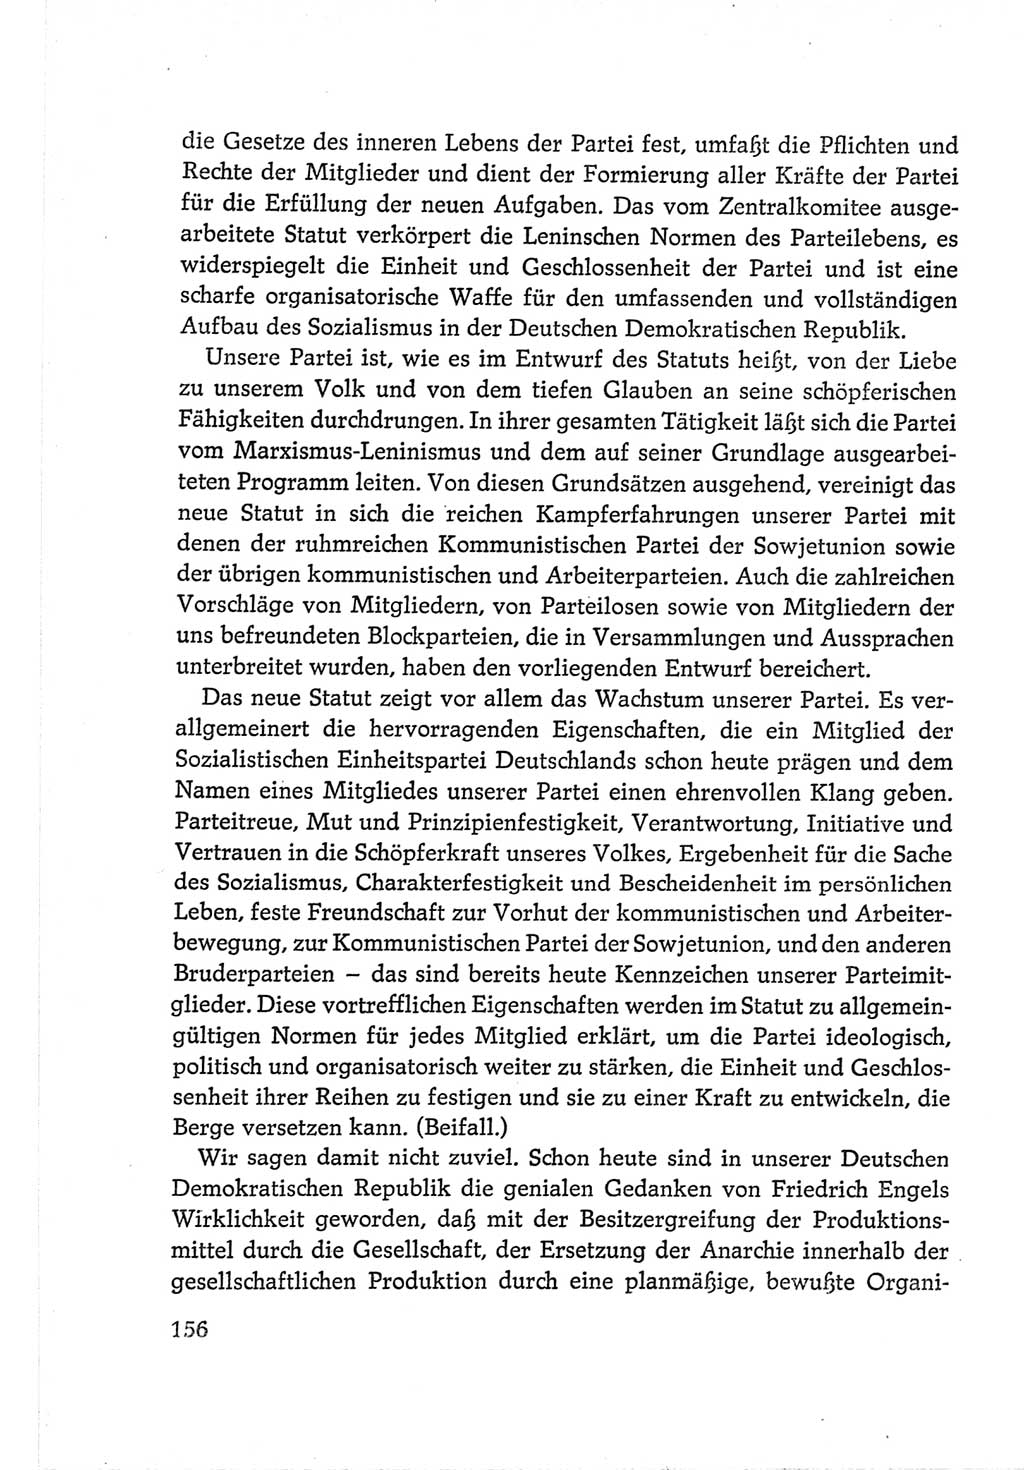 Protokoll der Verhandlungen des Ⅵ. Parteitages der Sozialistischen Einheitspartei Deutschlands (SED) [Deutsche Demokratische Republik (DDR)] 1963, Band Ⅱ, Seite 156 (Prot. Verh. Ⅵ. PT SED DDR 1963, Bd. Ⅱ, S. 156)